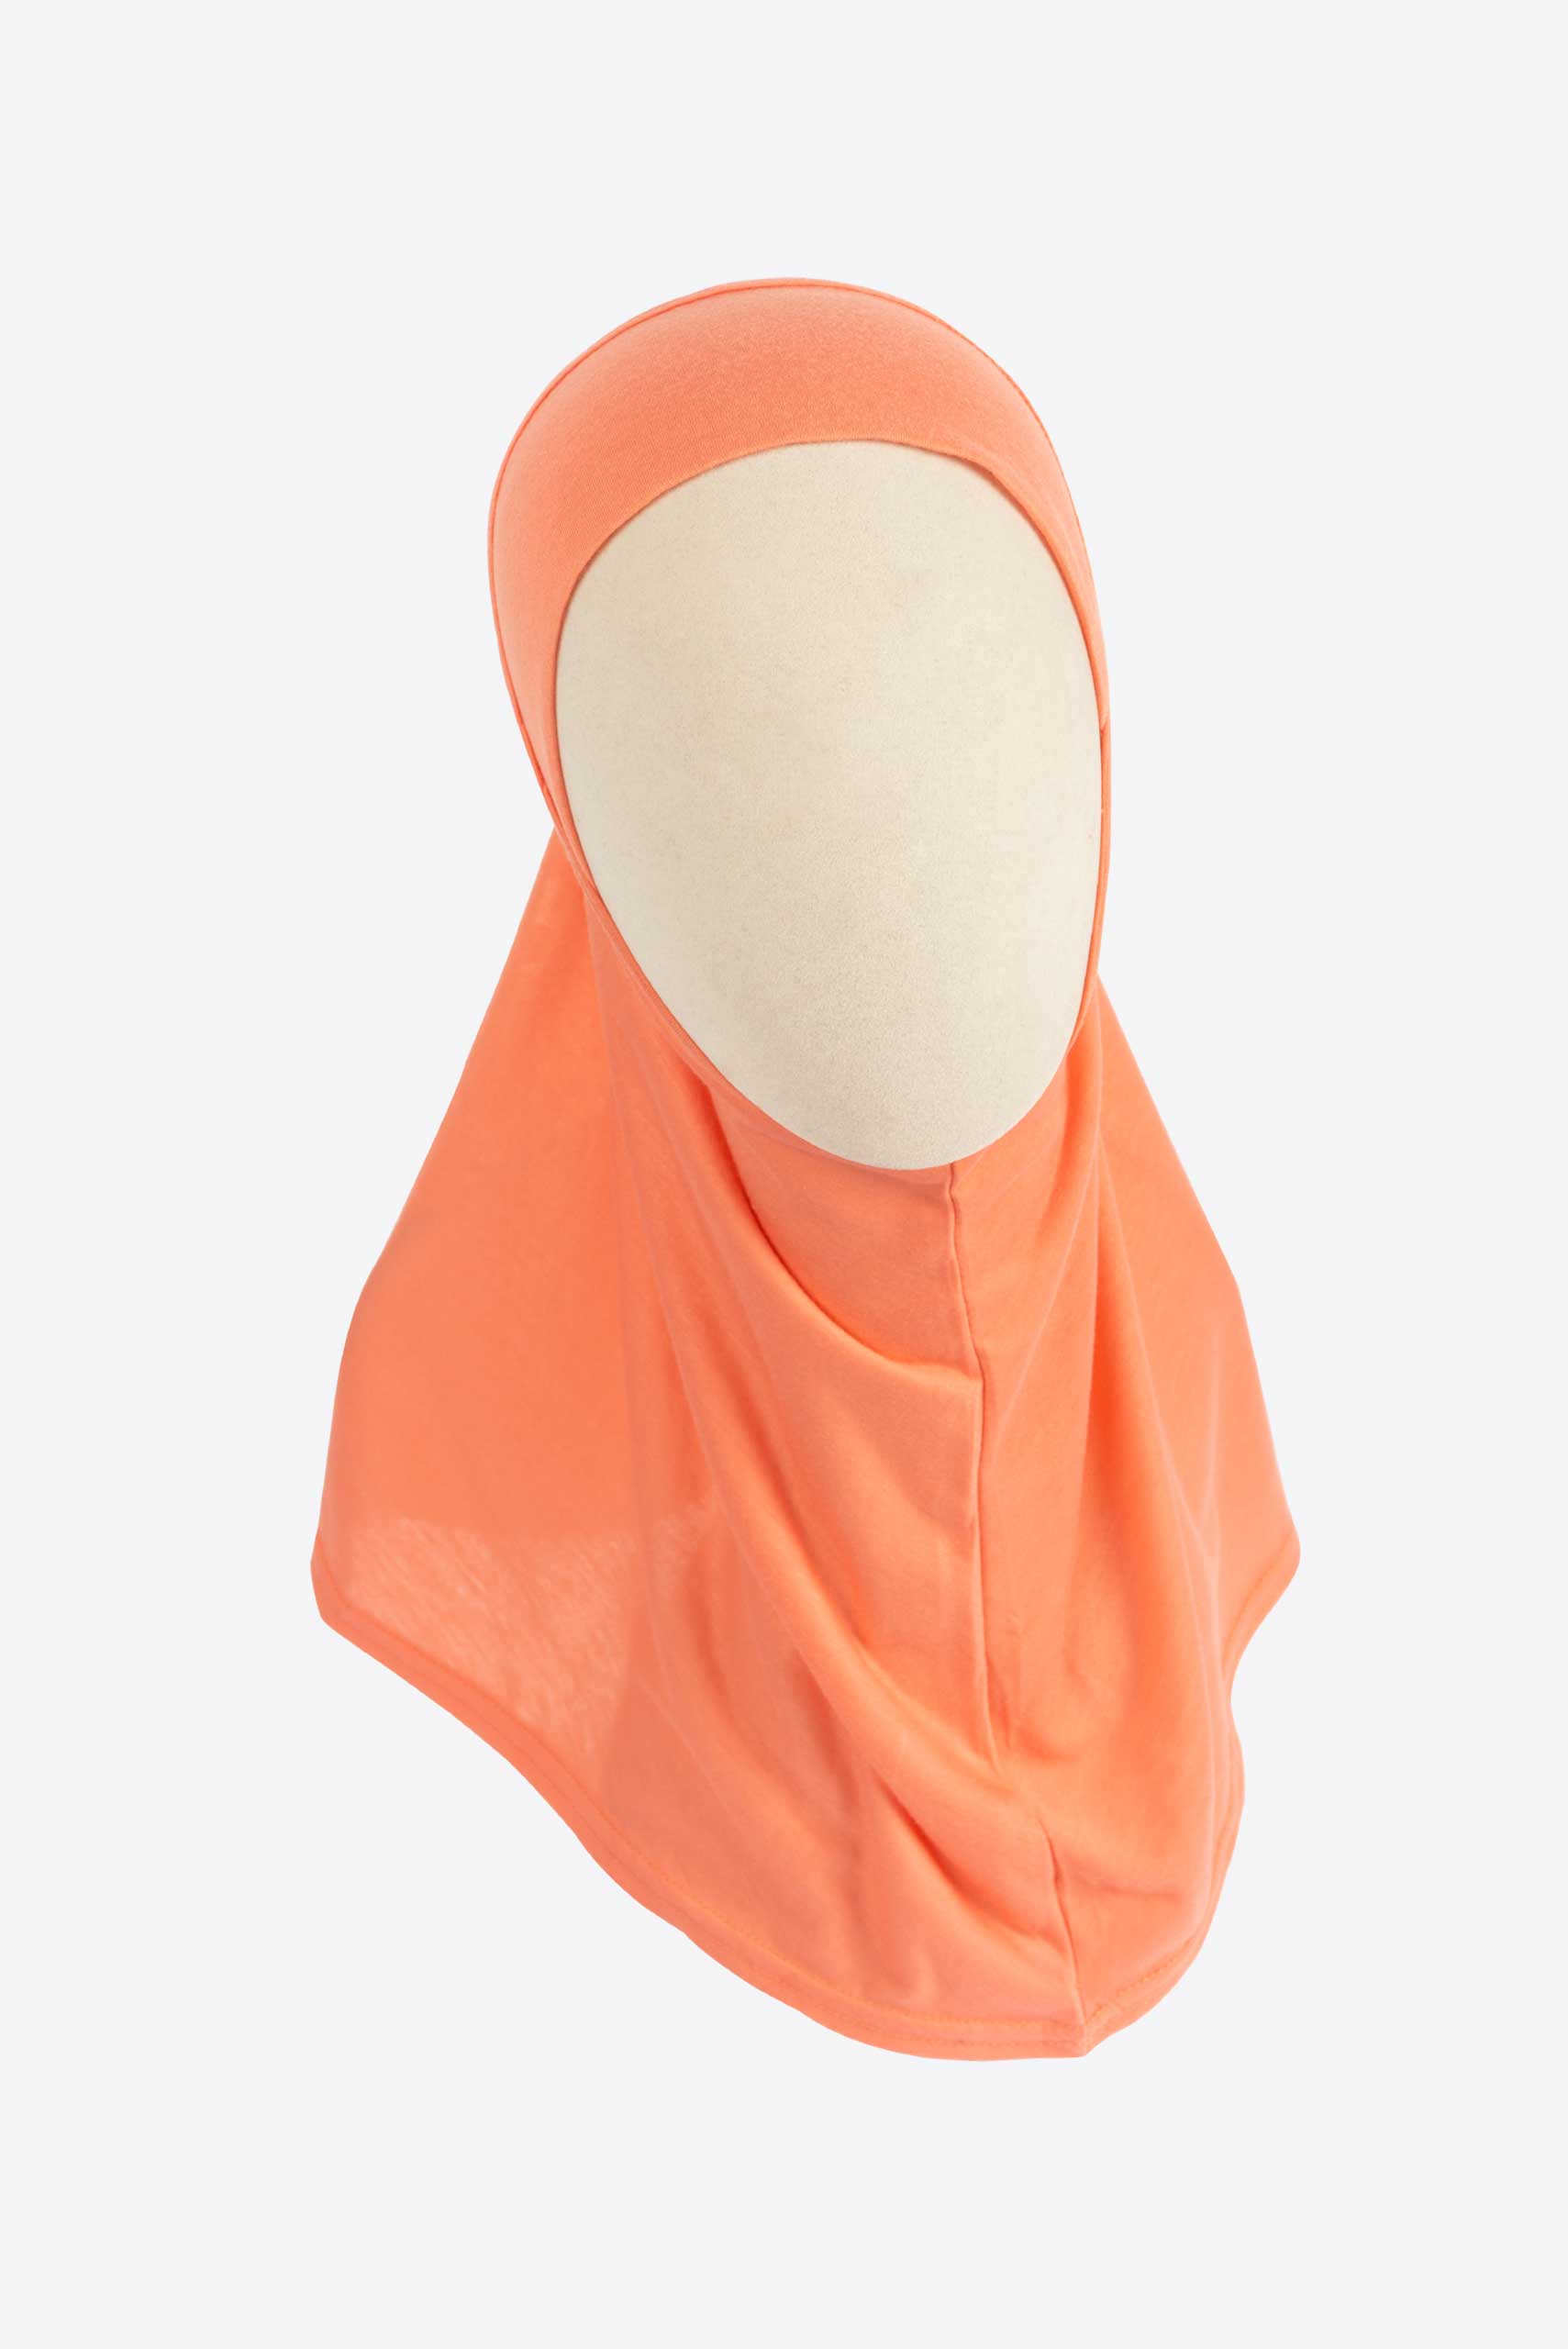 Simple Hijab Scarf - Hijab Scarf - Muslim Lifestyle Store